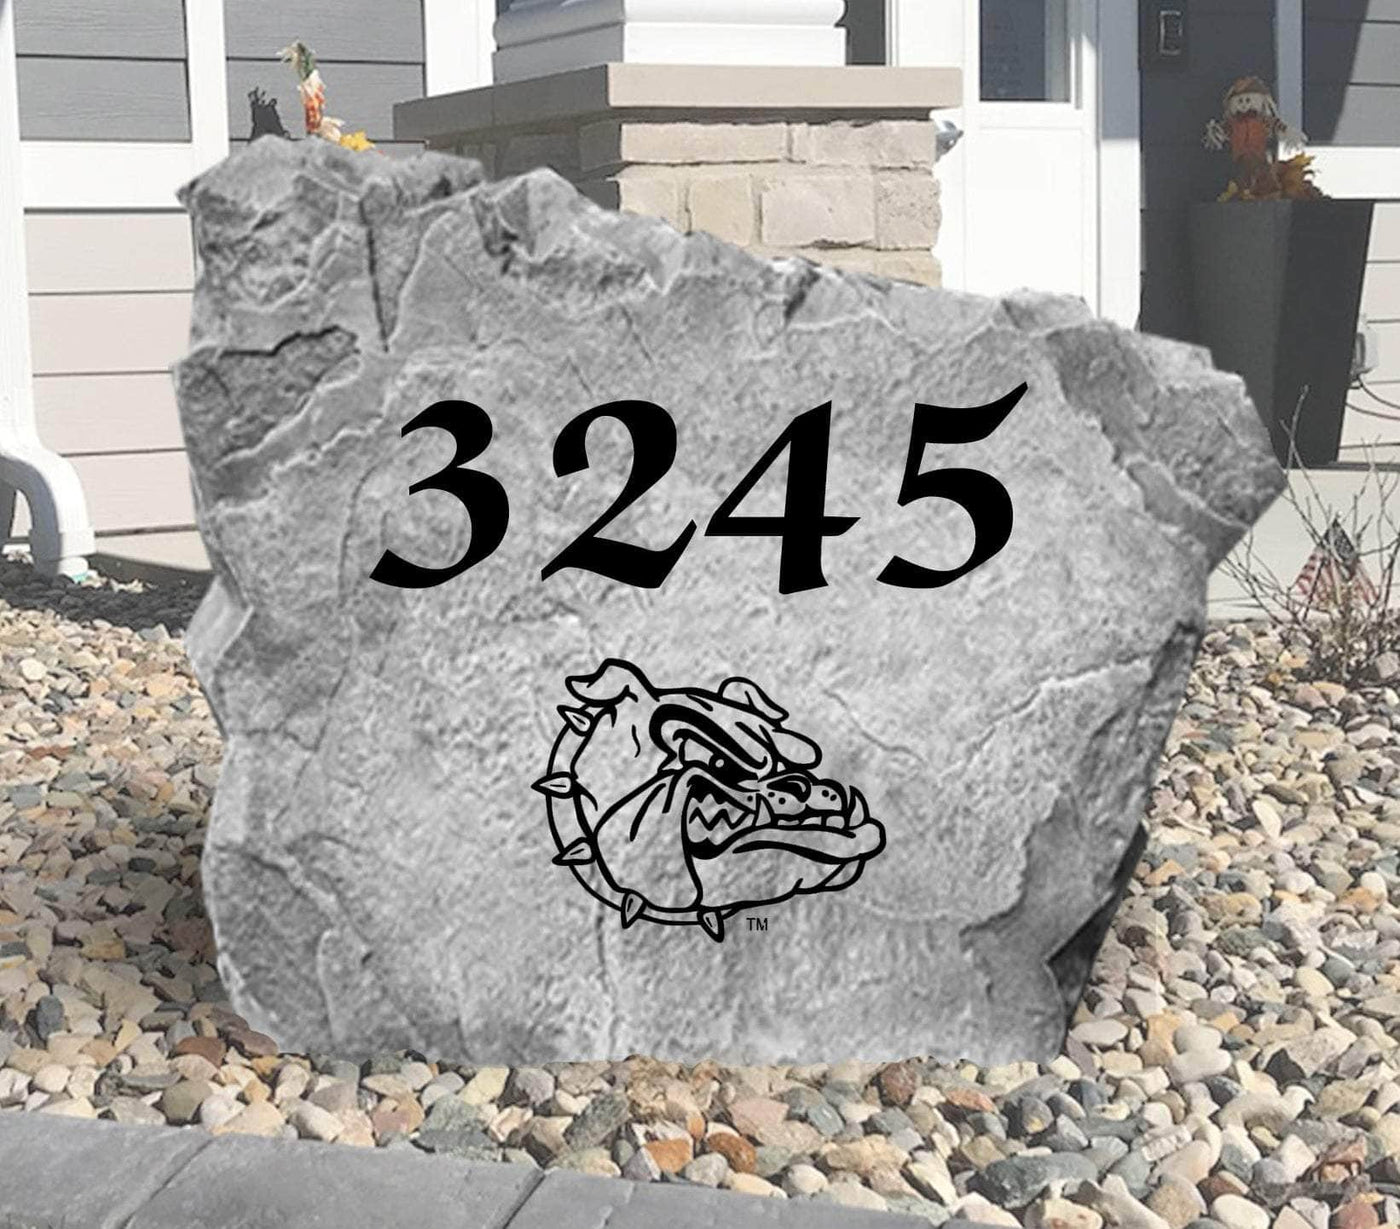 Gonzaga University Address Stone